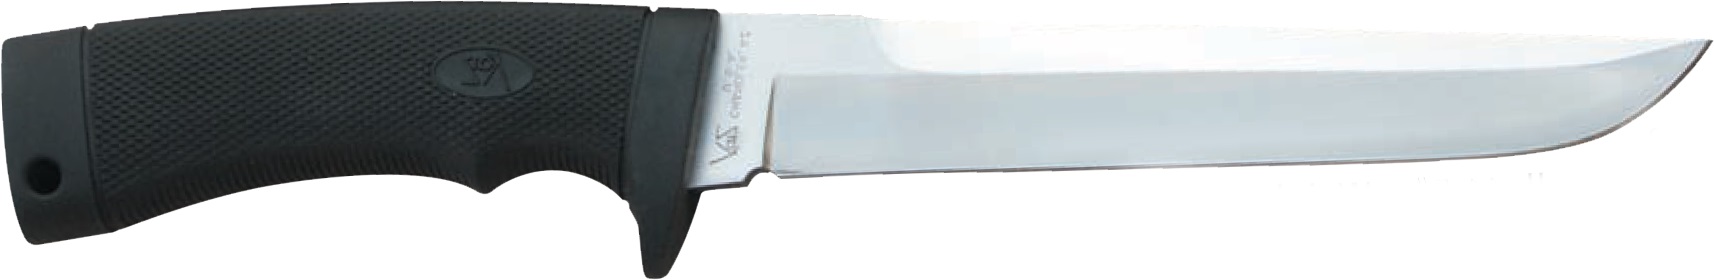 Нож Katz K 1006 сталь XT-80 рукоять кратон - фото 1